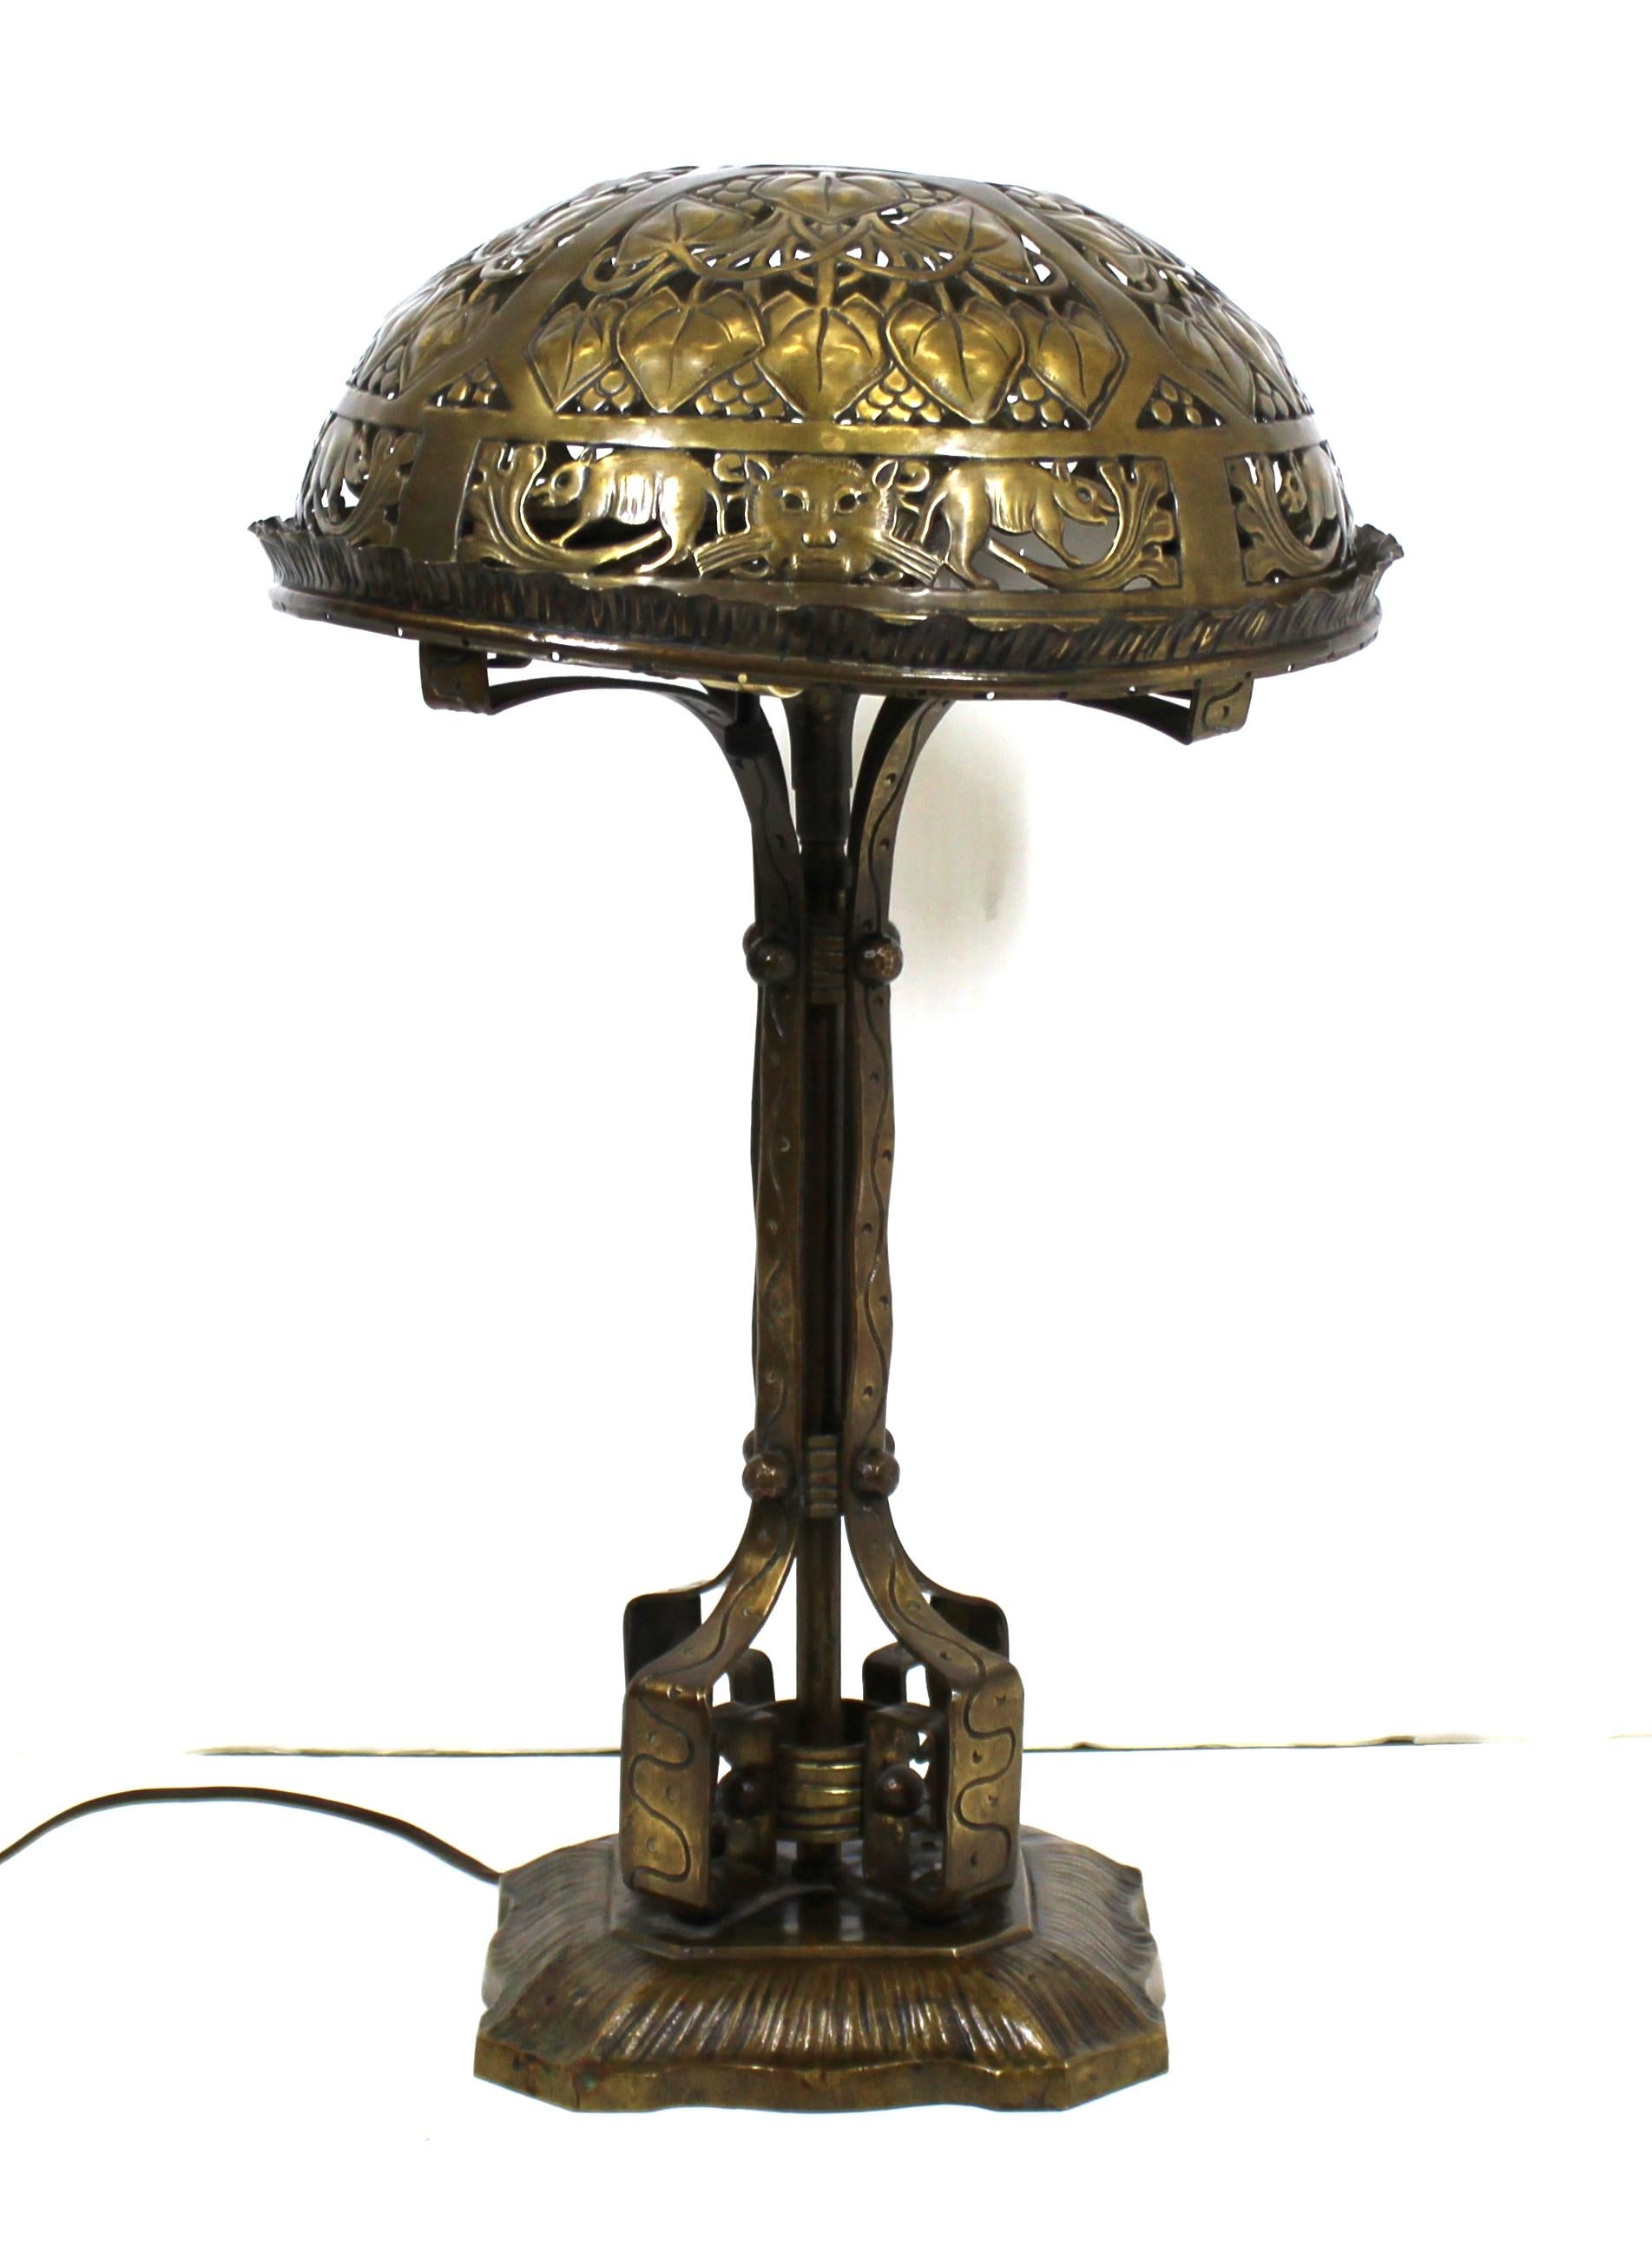 Lampe de table allemande Jugendstil en laiton et bronze repoussé à la main, attribuée à Oscar Bach. La pièce présente des chats et des souris décoratifs sur son abat-jour et dispose de deux douilles d'éclairage. Fabriquée vers 1900 en Allemagne, la